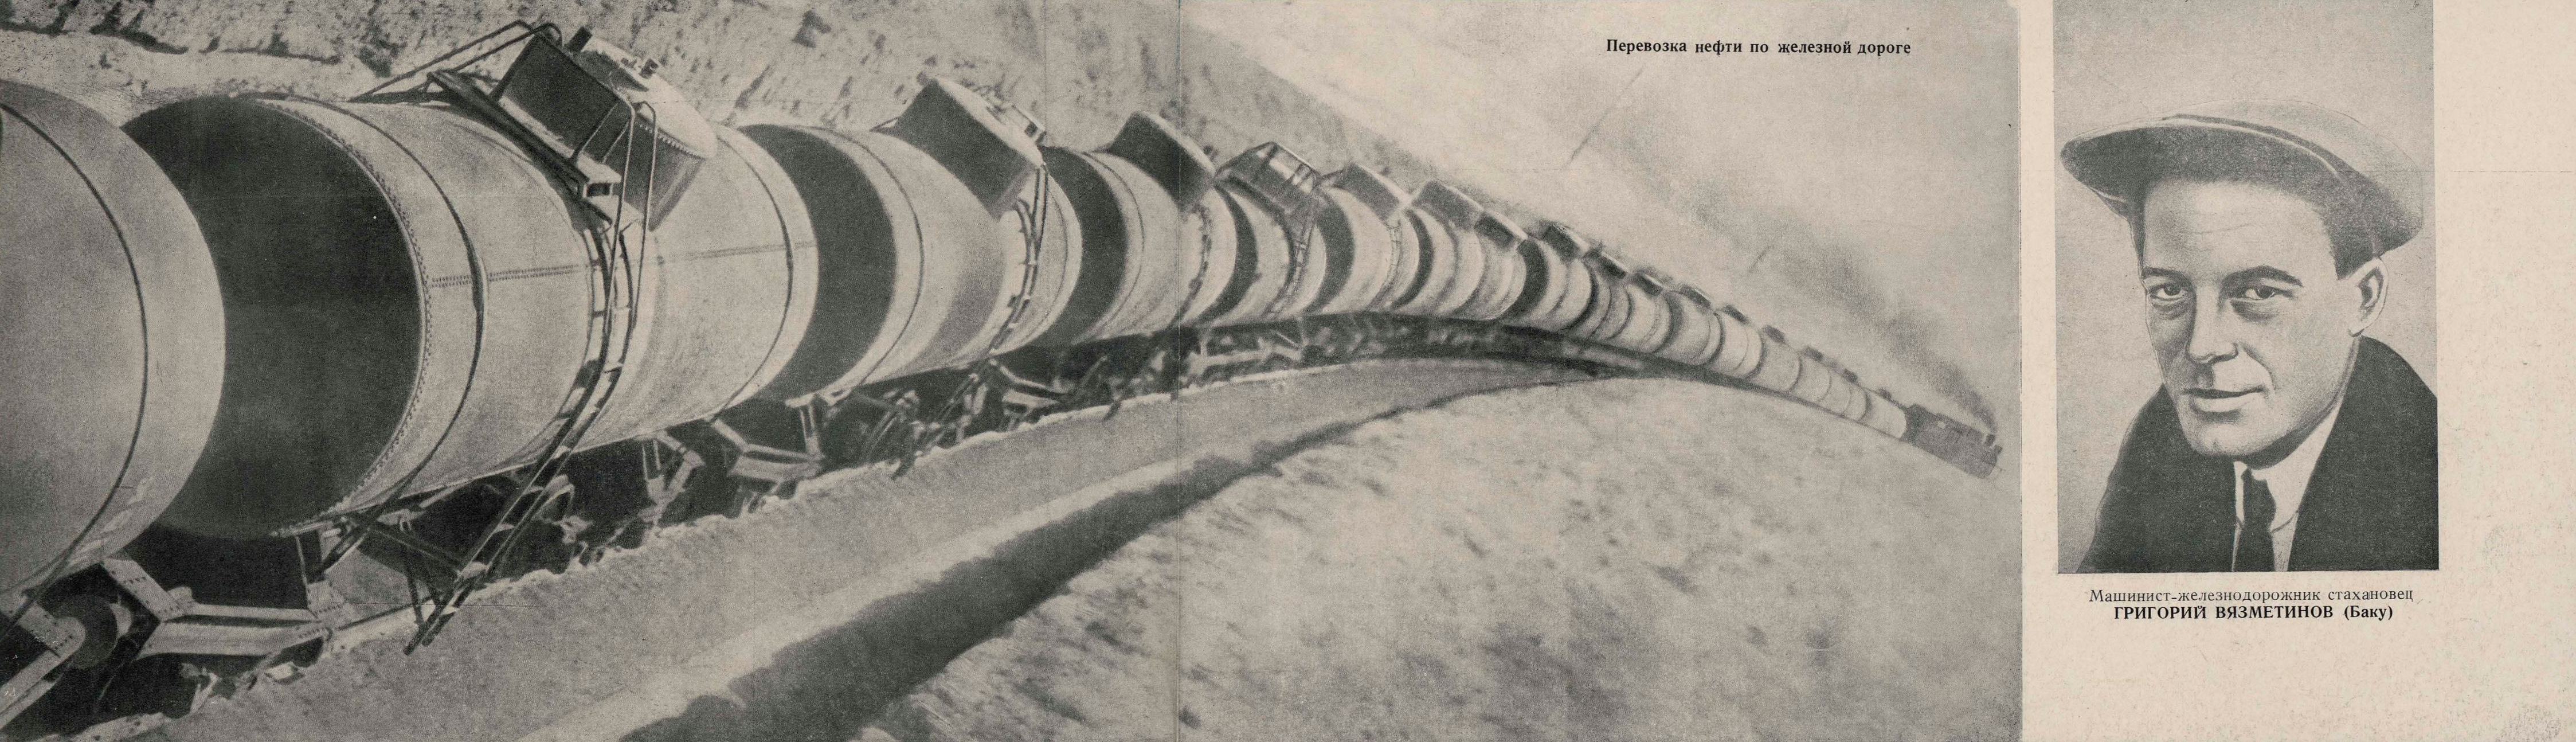 Перевозка нефти по железной дороге. Машинист-железнодорожник стахановец Григорий Вязметинов (Баку)